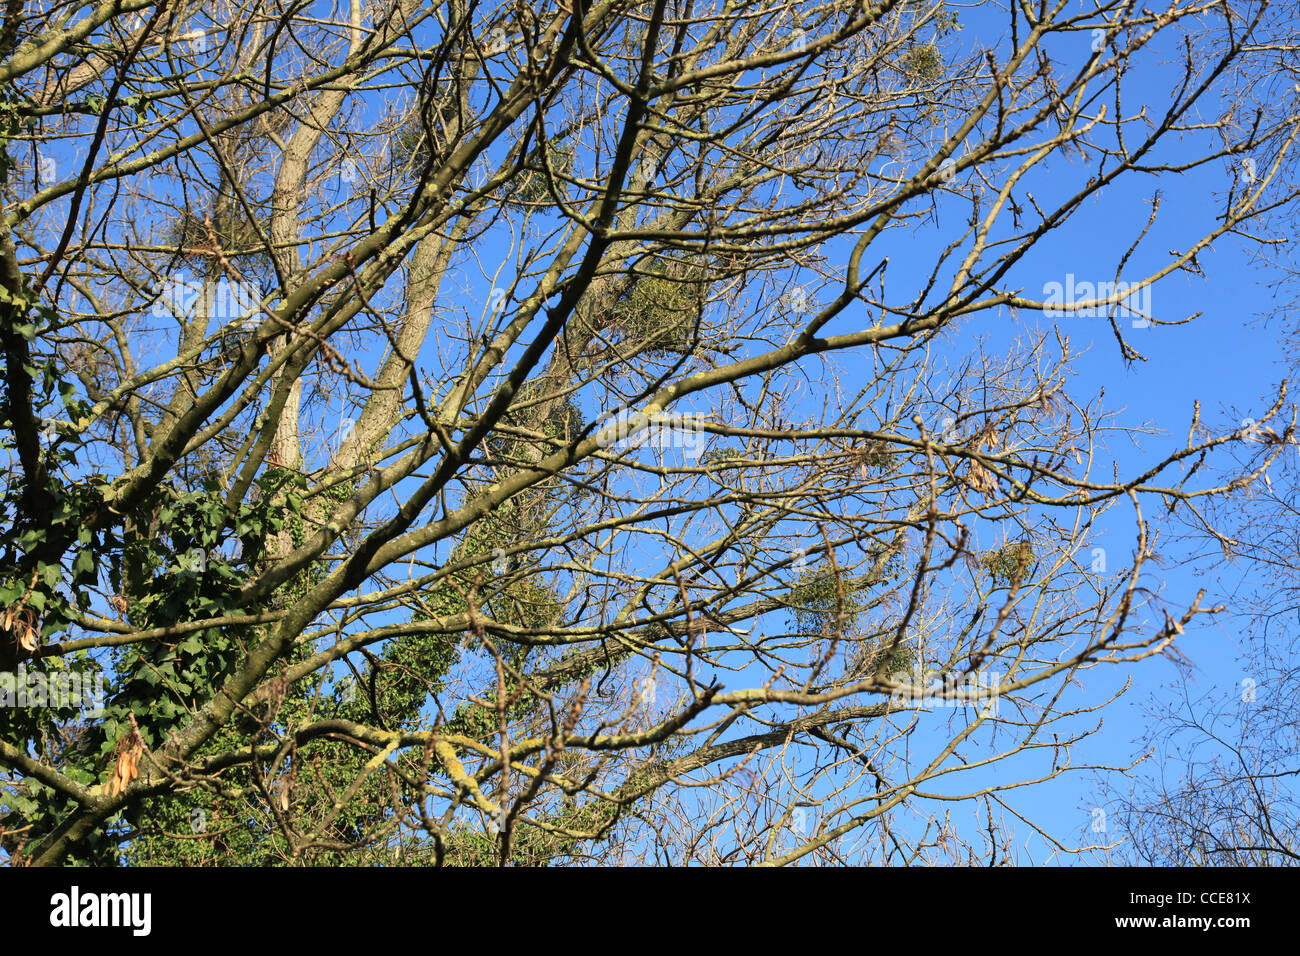 Natur,Winter,Baum,Bäume,Beeren,Mistel,blau,Sonnenschein,blauer Himmel,Mauer,filigran,grün,blau,Geäst,Schatten Stock Photo